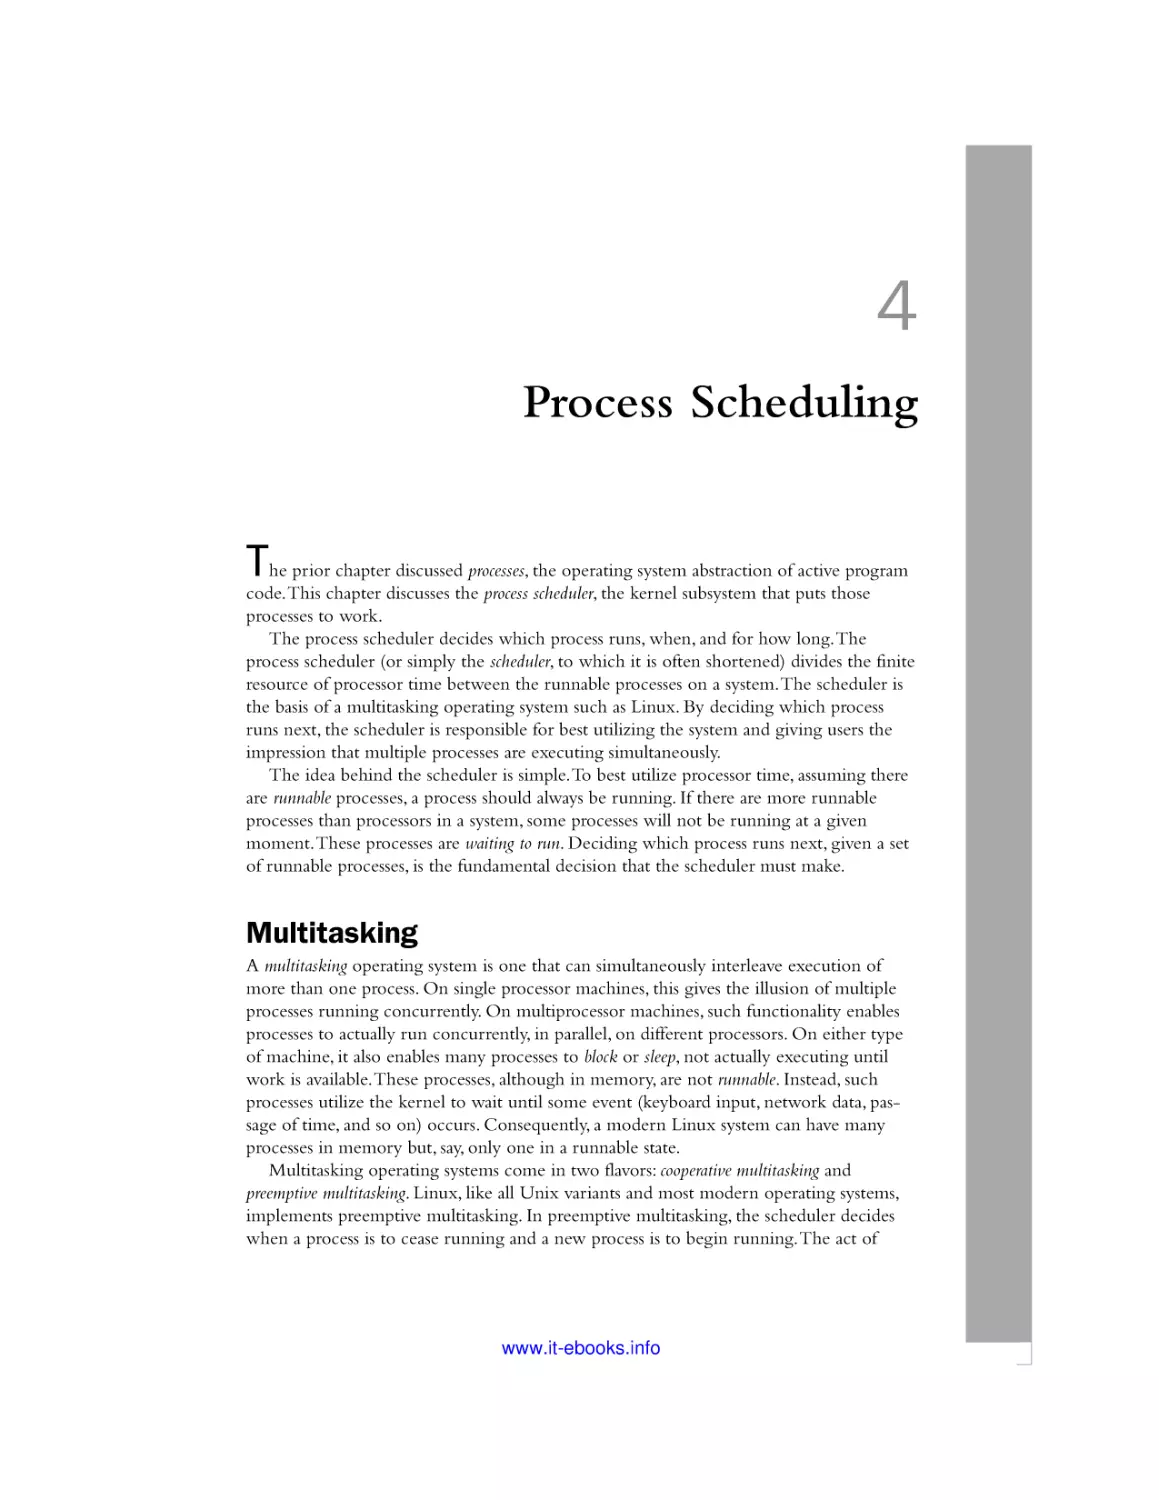 4 Process Scheduling
Multitasking